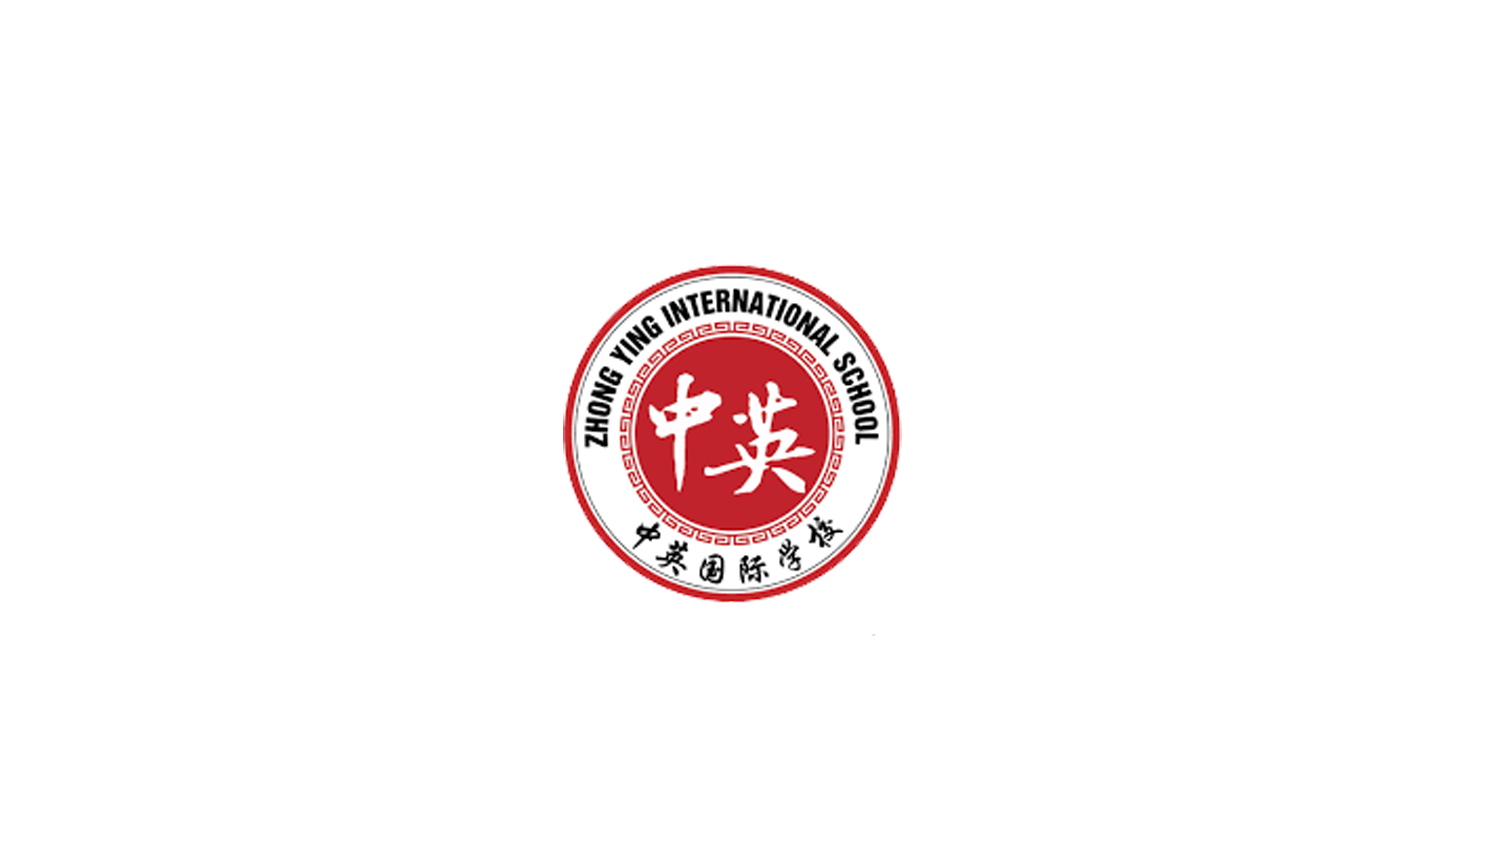 Zhong Ying International School